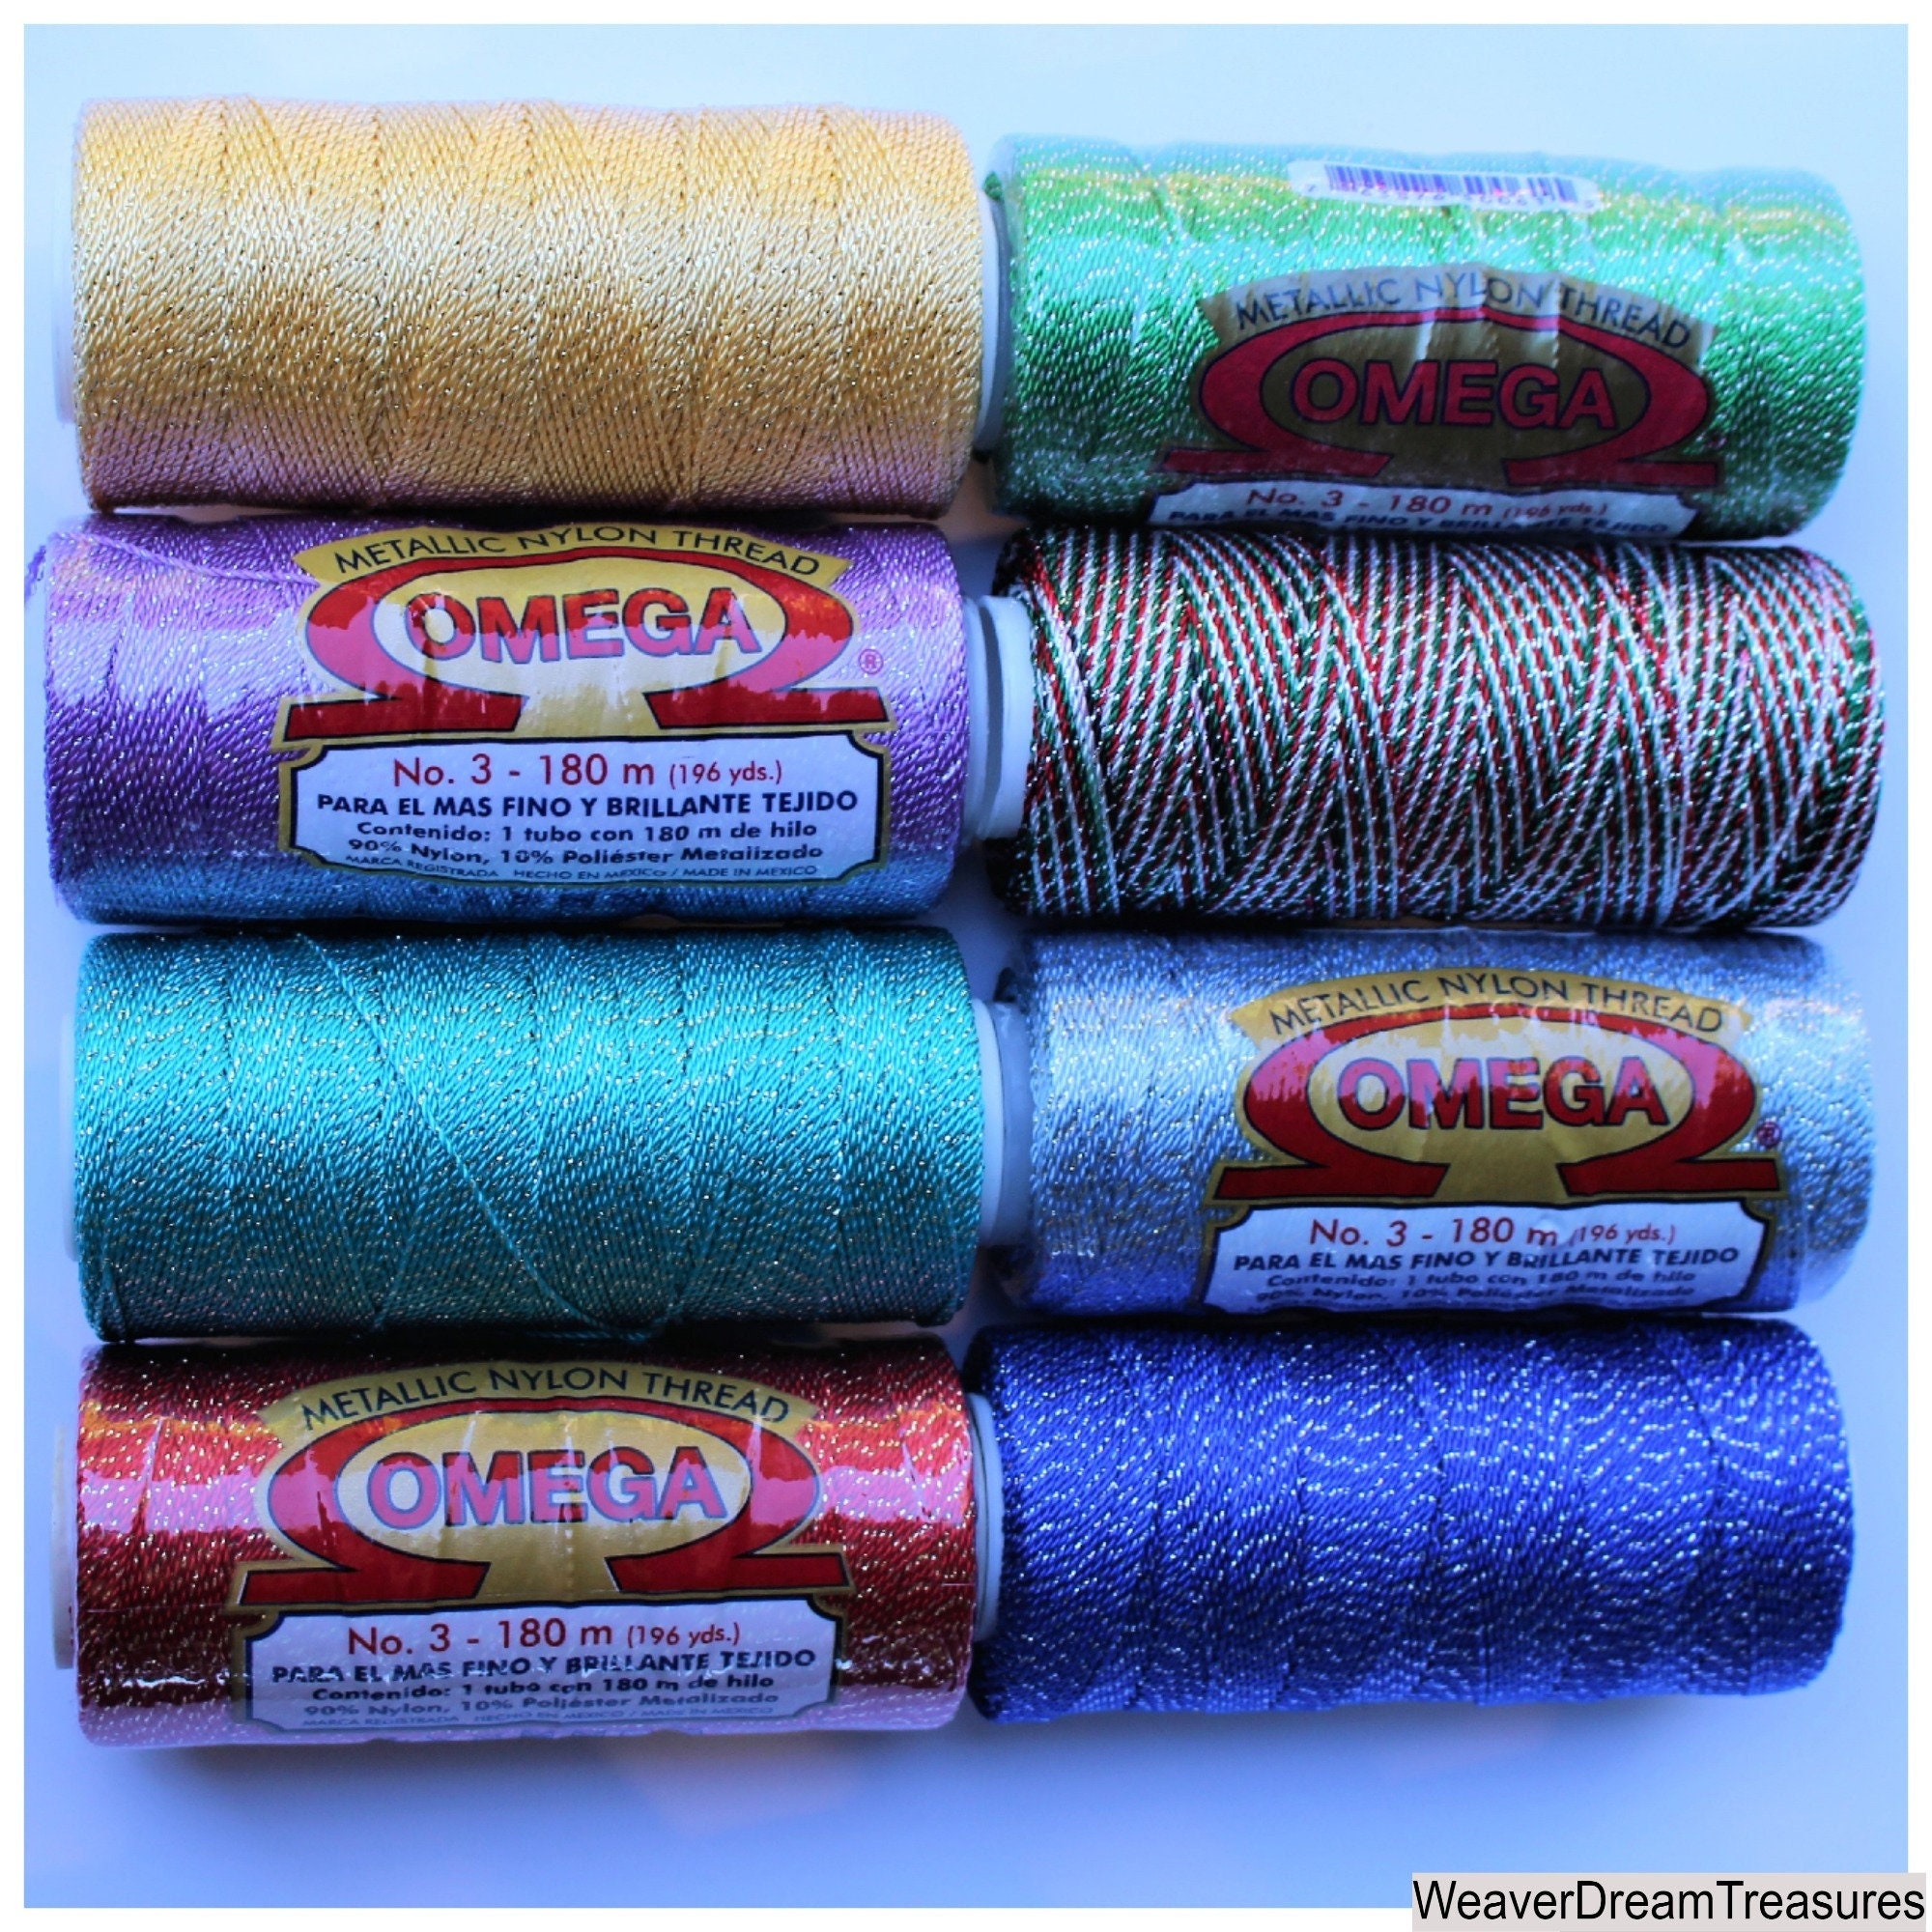  Espiga No. 9-100% Nylon Omega String Cord for Knitting and  Crochet - 01 White